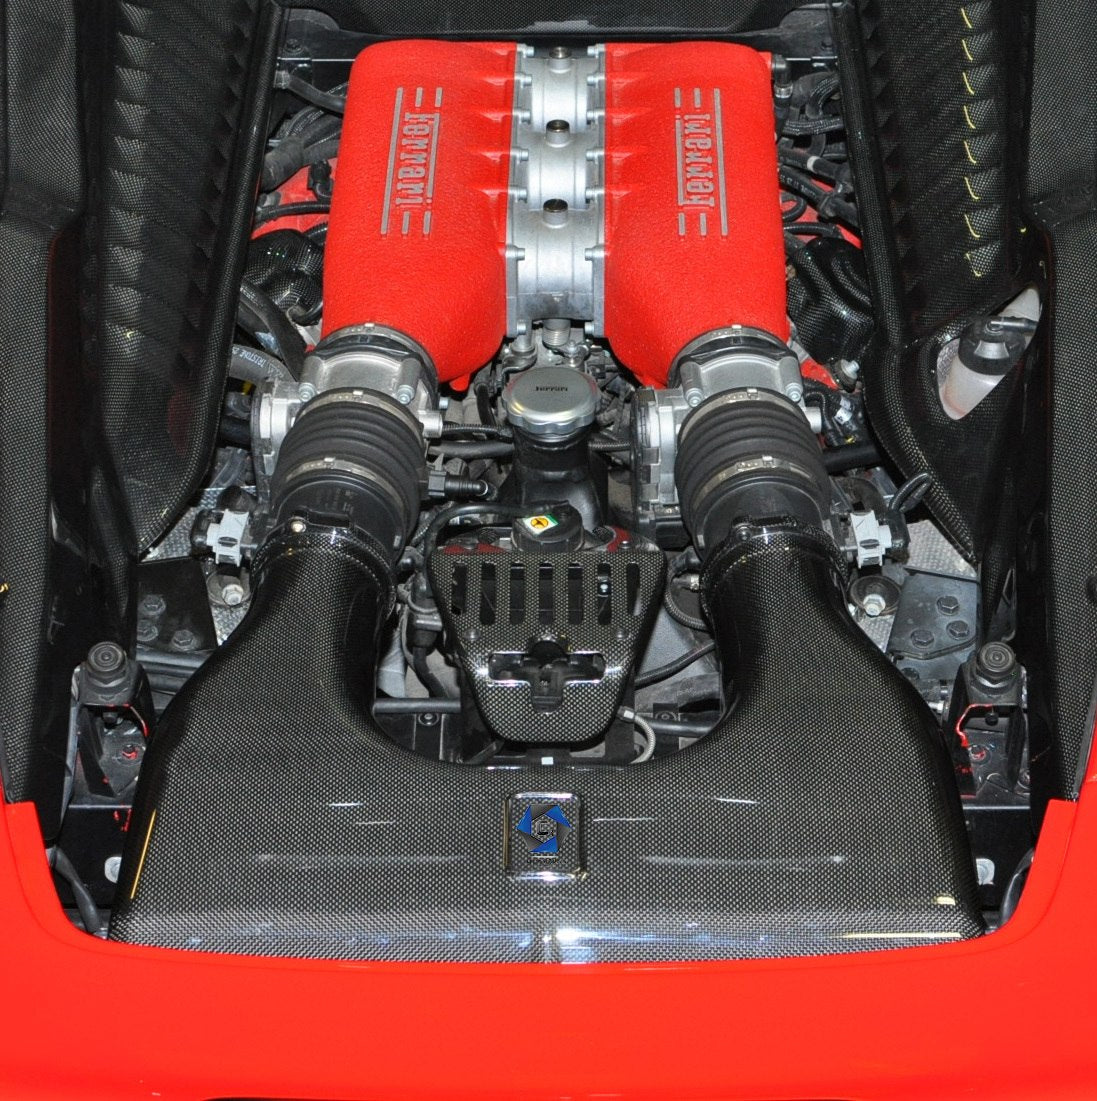 C3 Carbon Ferrari 458 Carbon Fiber Bonnet Latch Cover